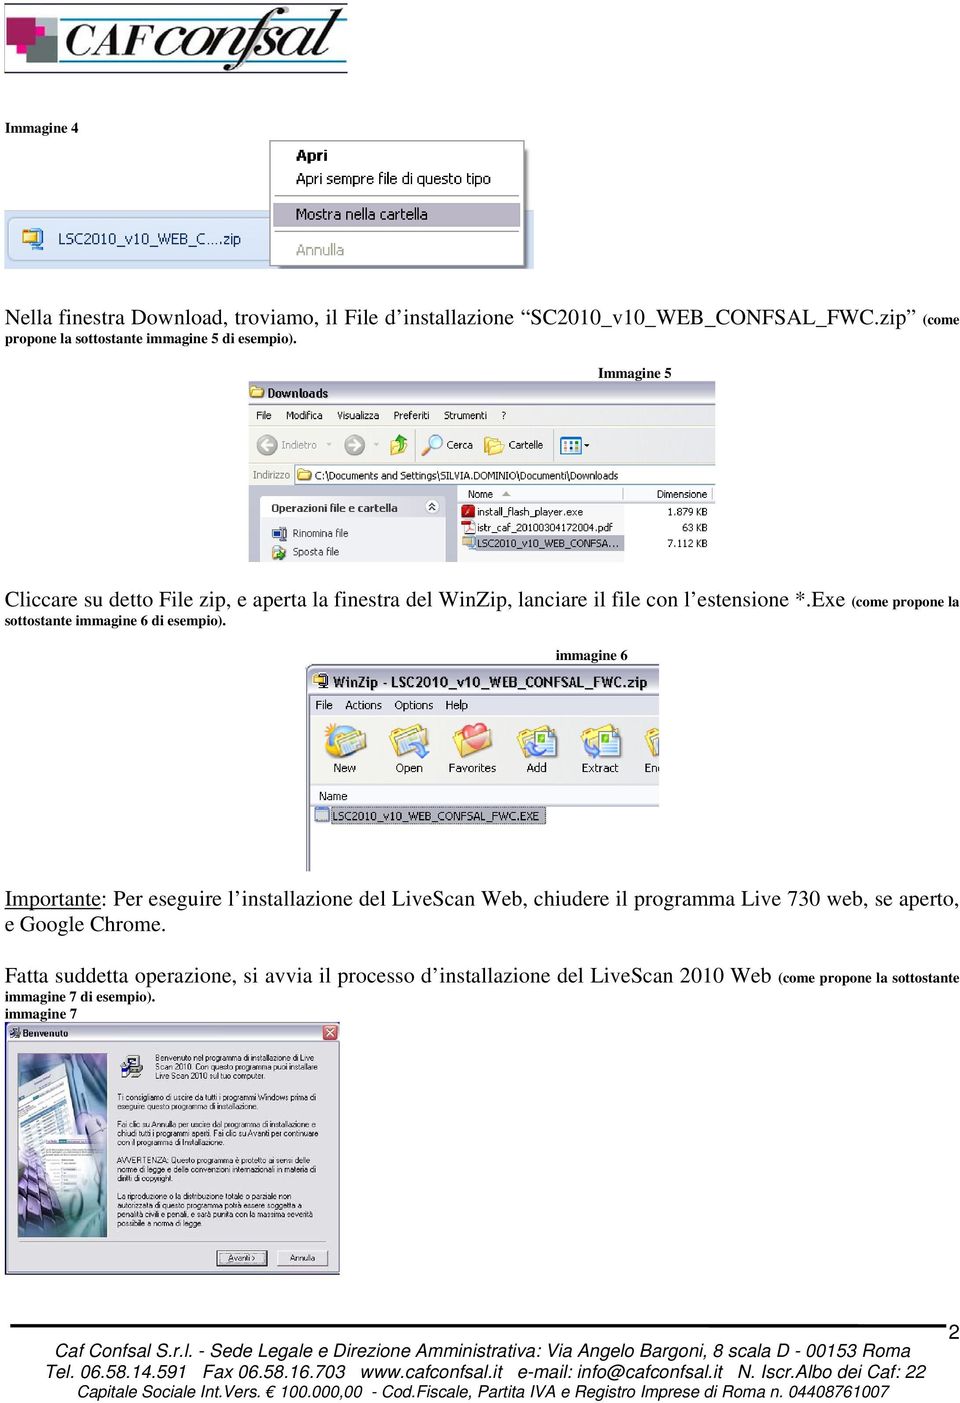 immagine 6 Importante: Per eseguire l installazione del LiveScan Web, chiudere il programma Live 730 web, se aperto, e Google Chrome.